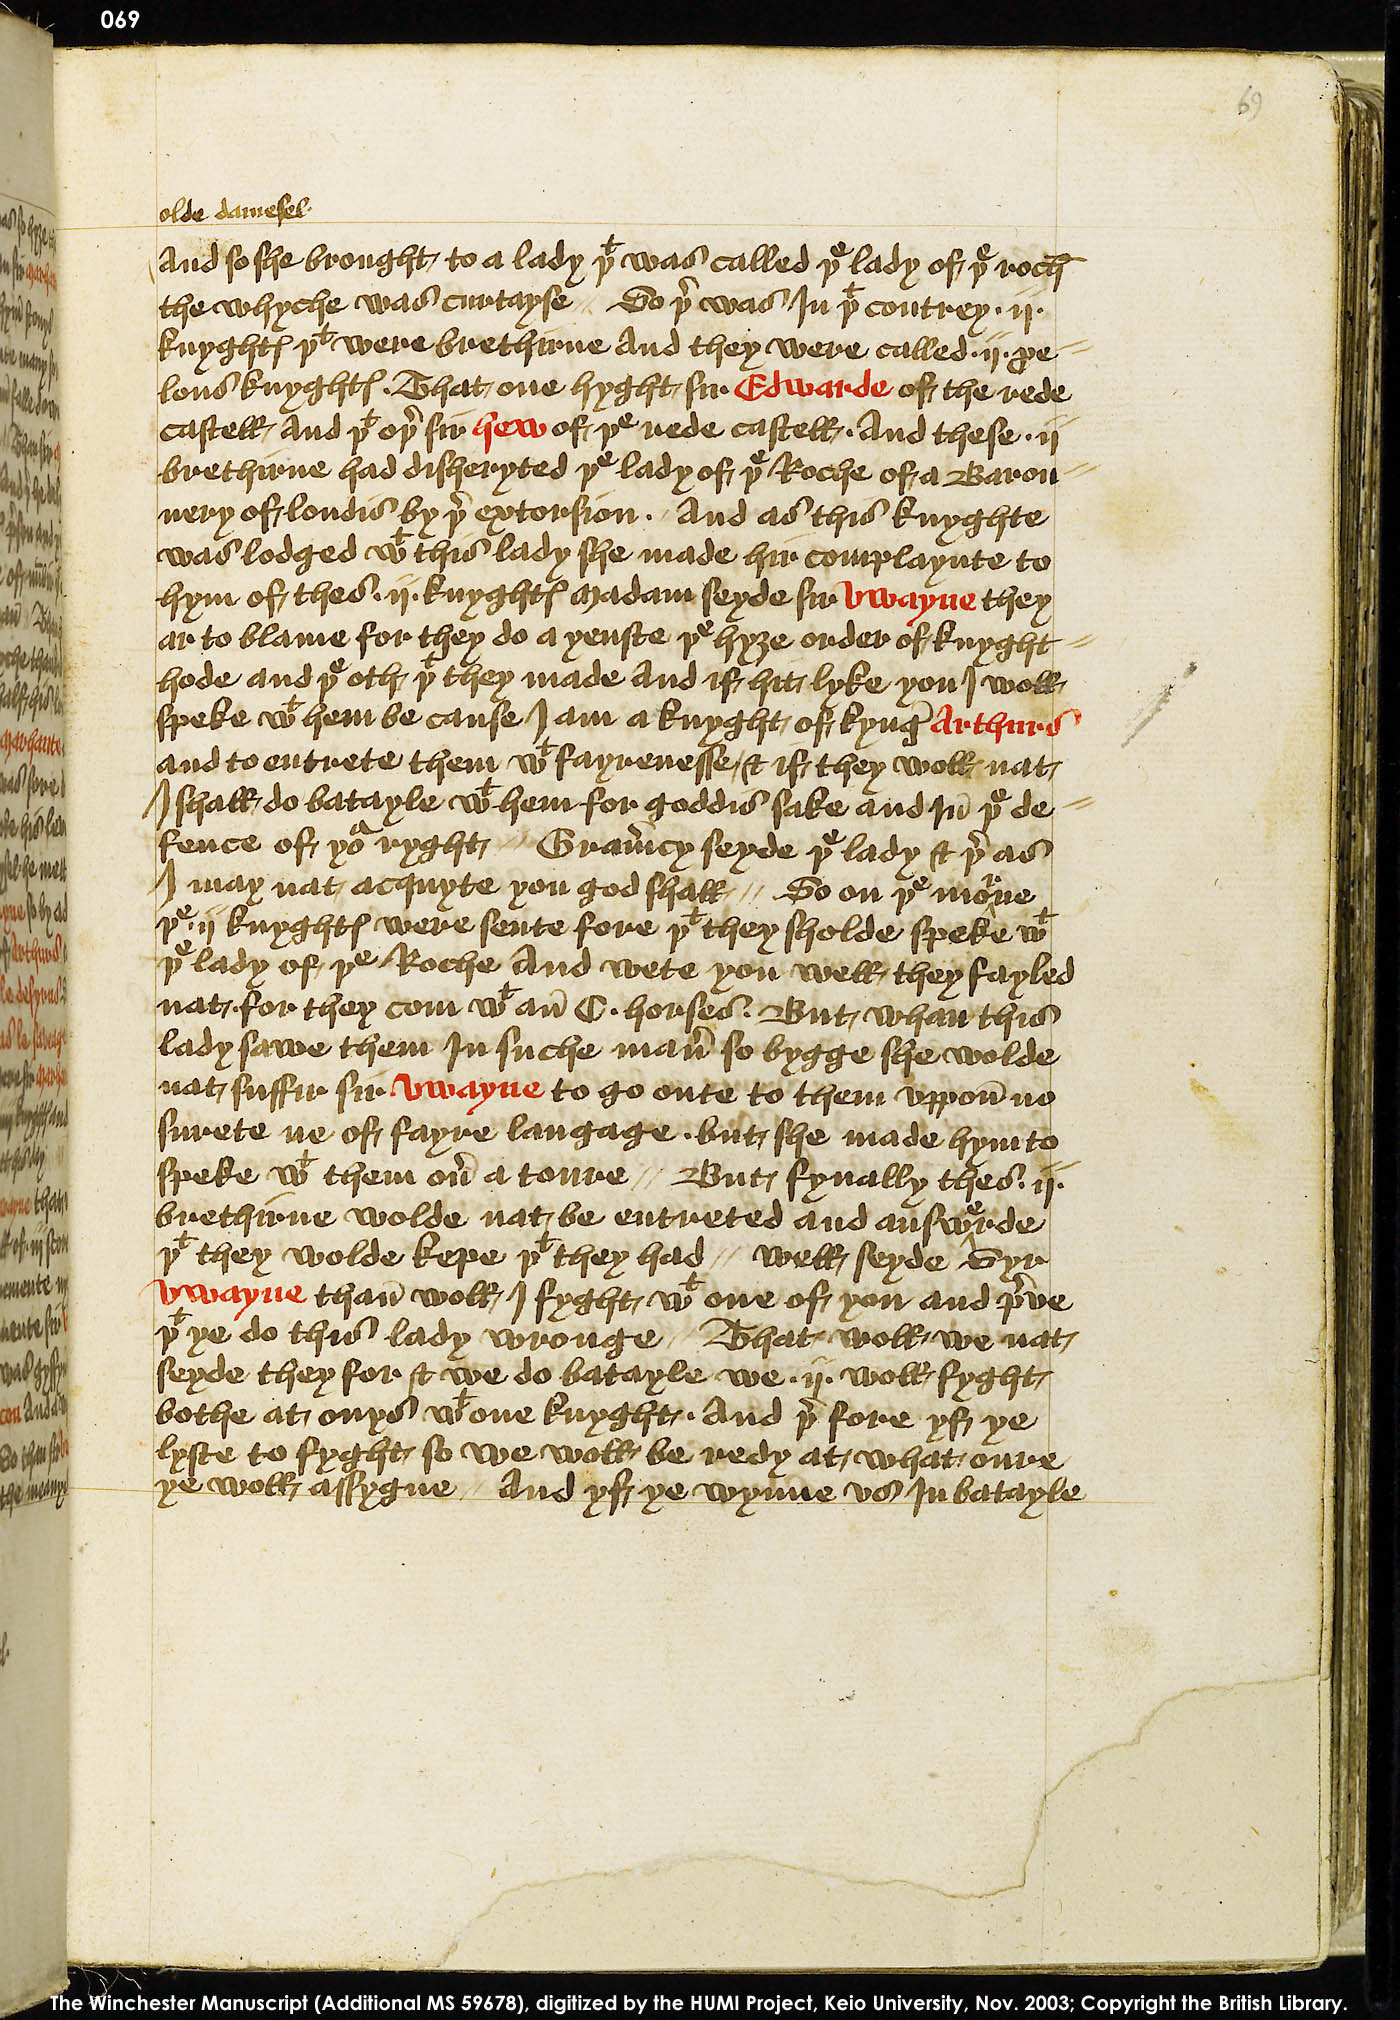 Folio 69r